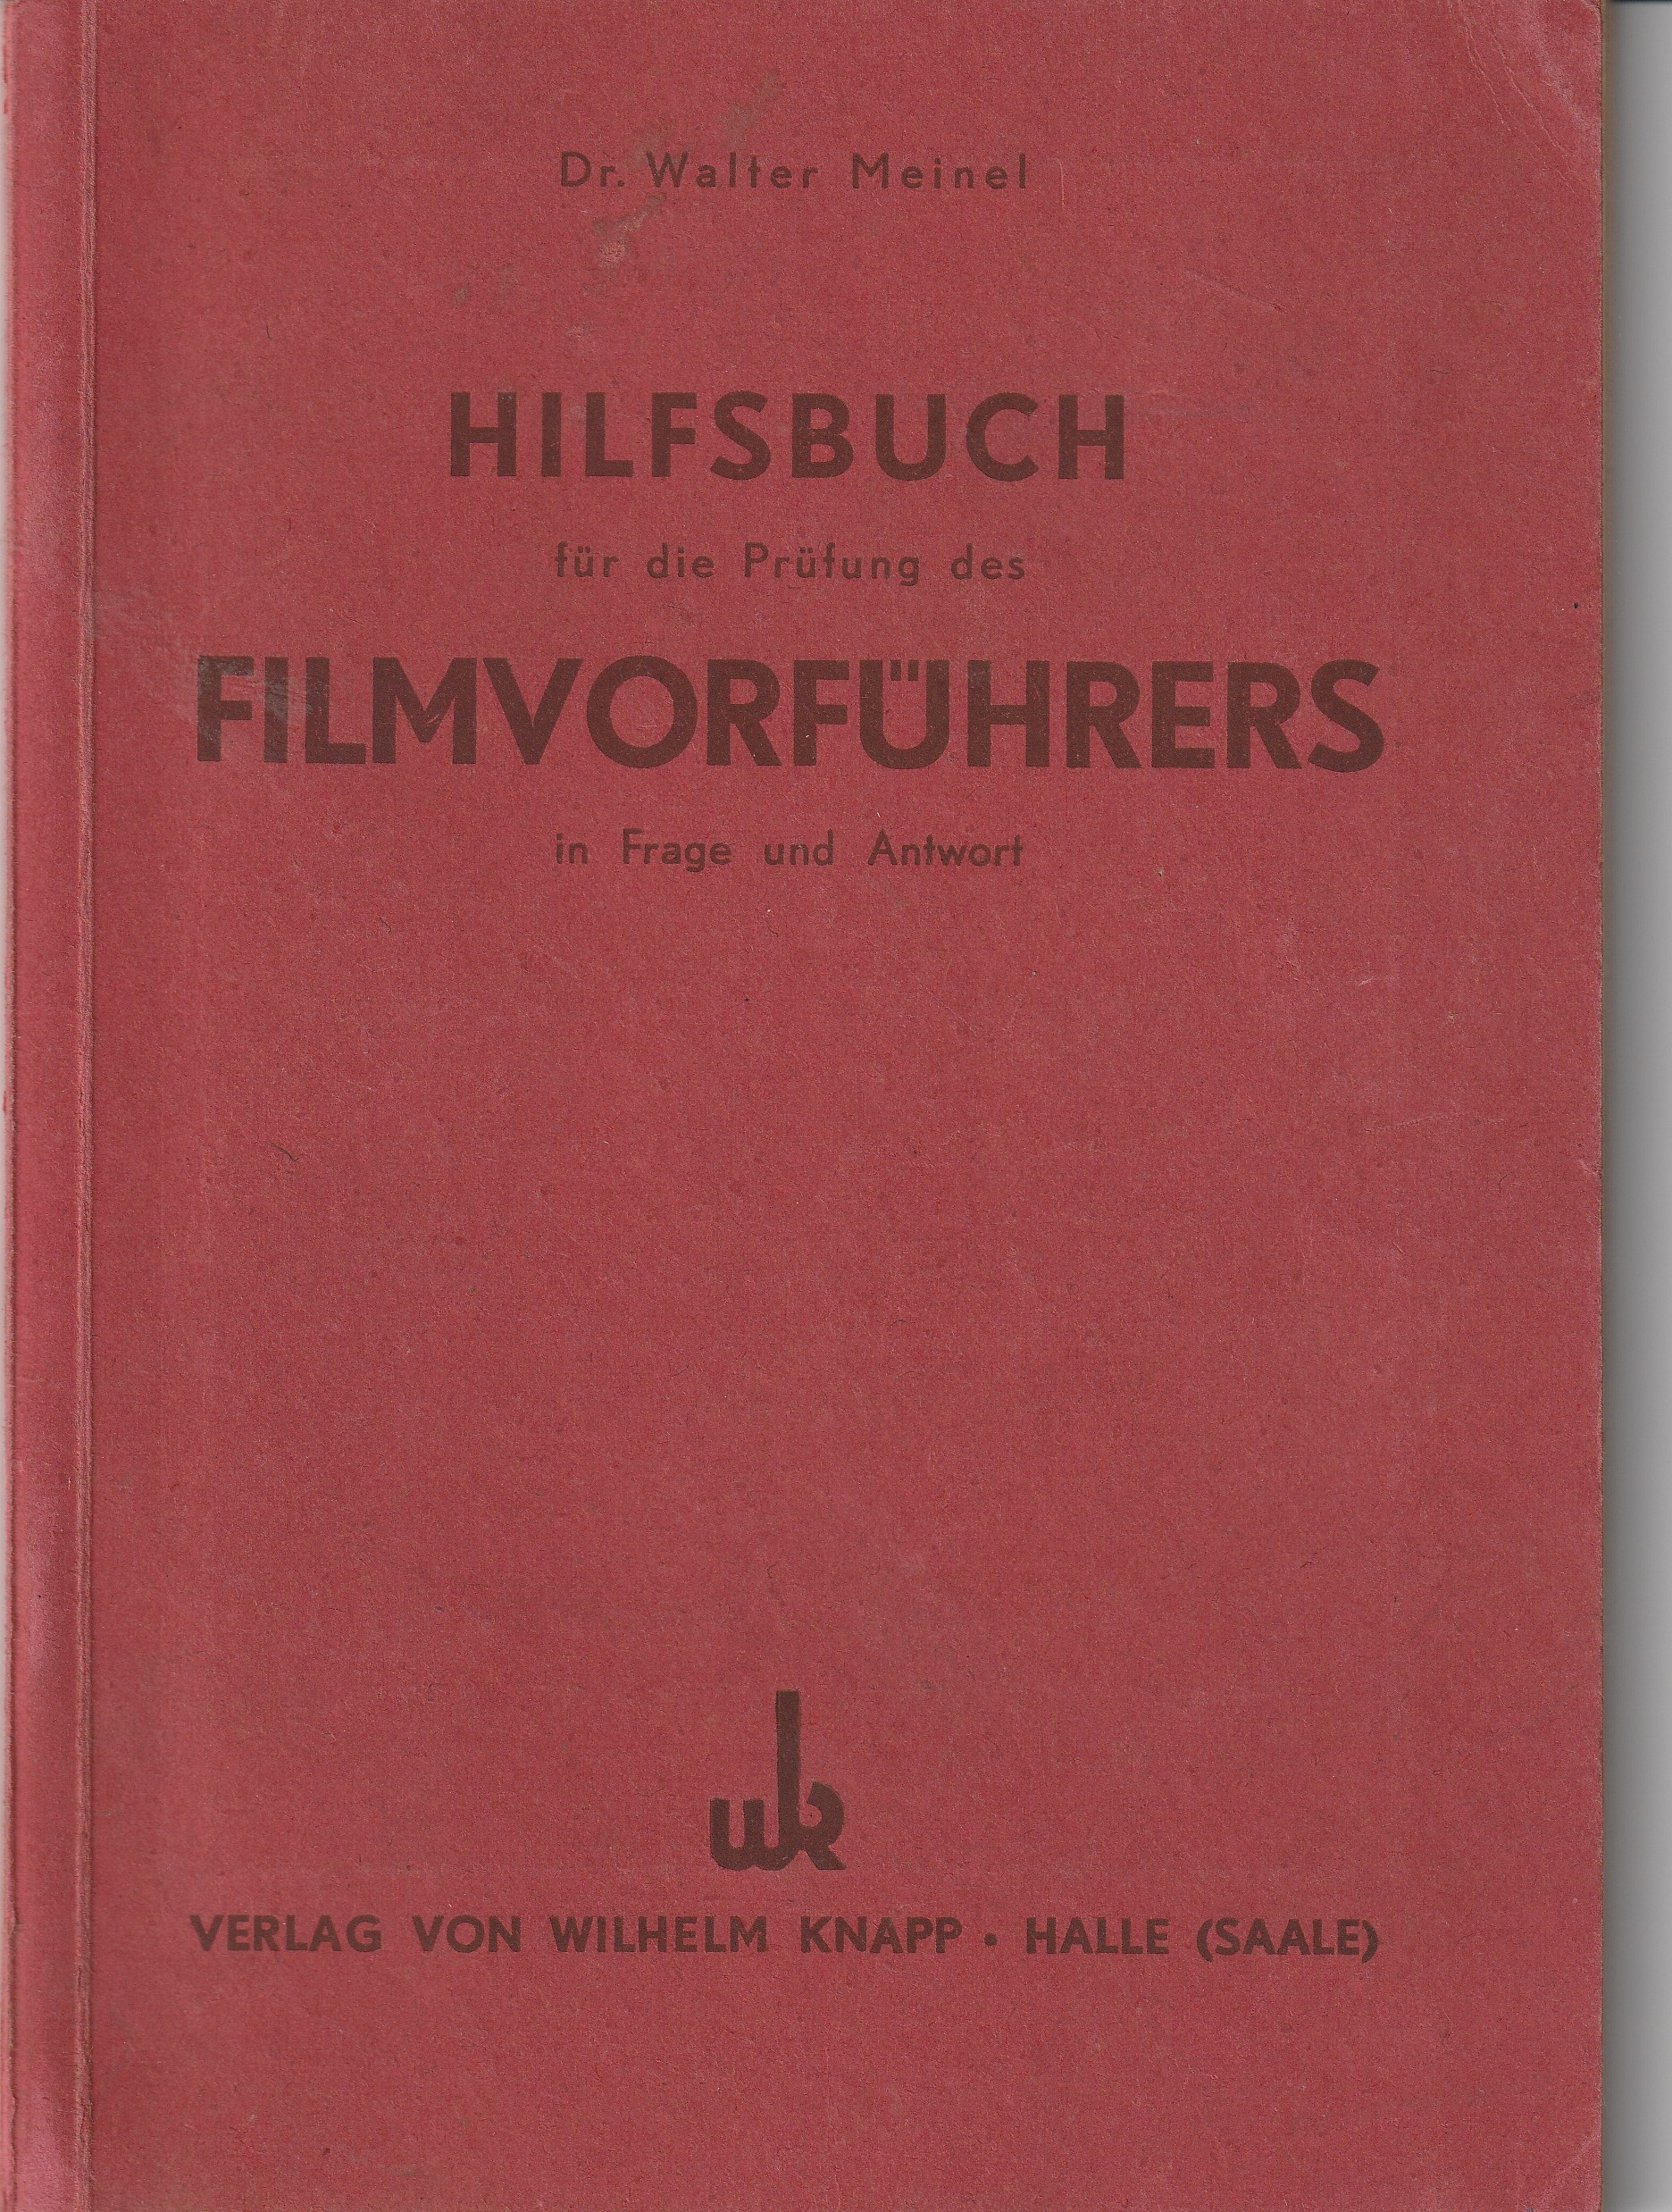 Unterlagen zur Ausbildung zum Filmvorführer (Kulturverein Guntersblum CC BY-NC-SA)